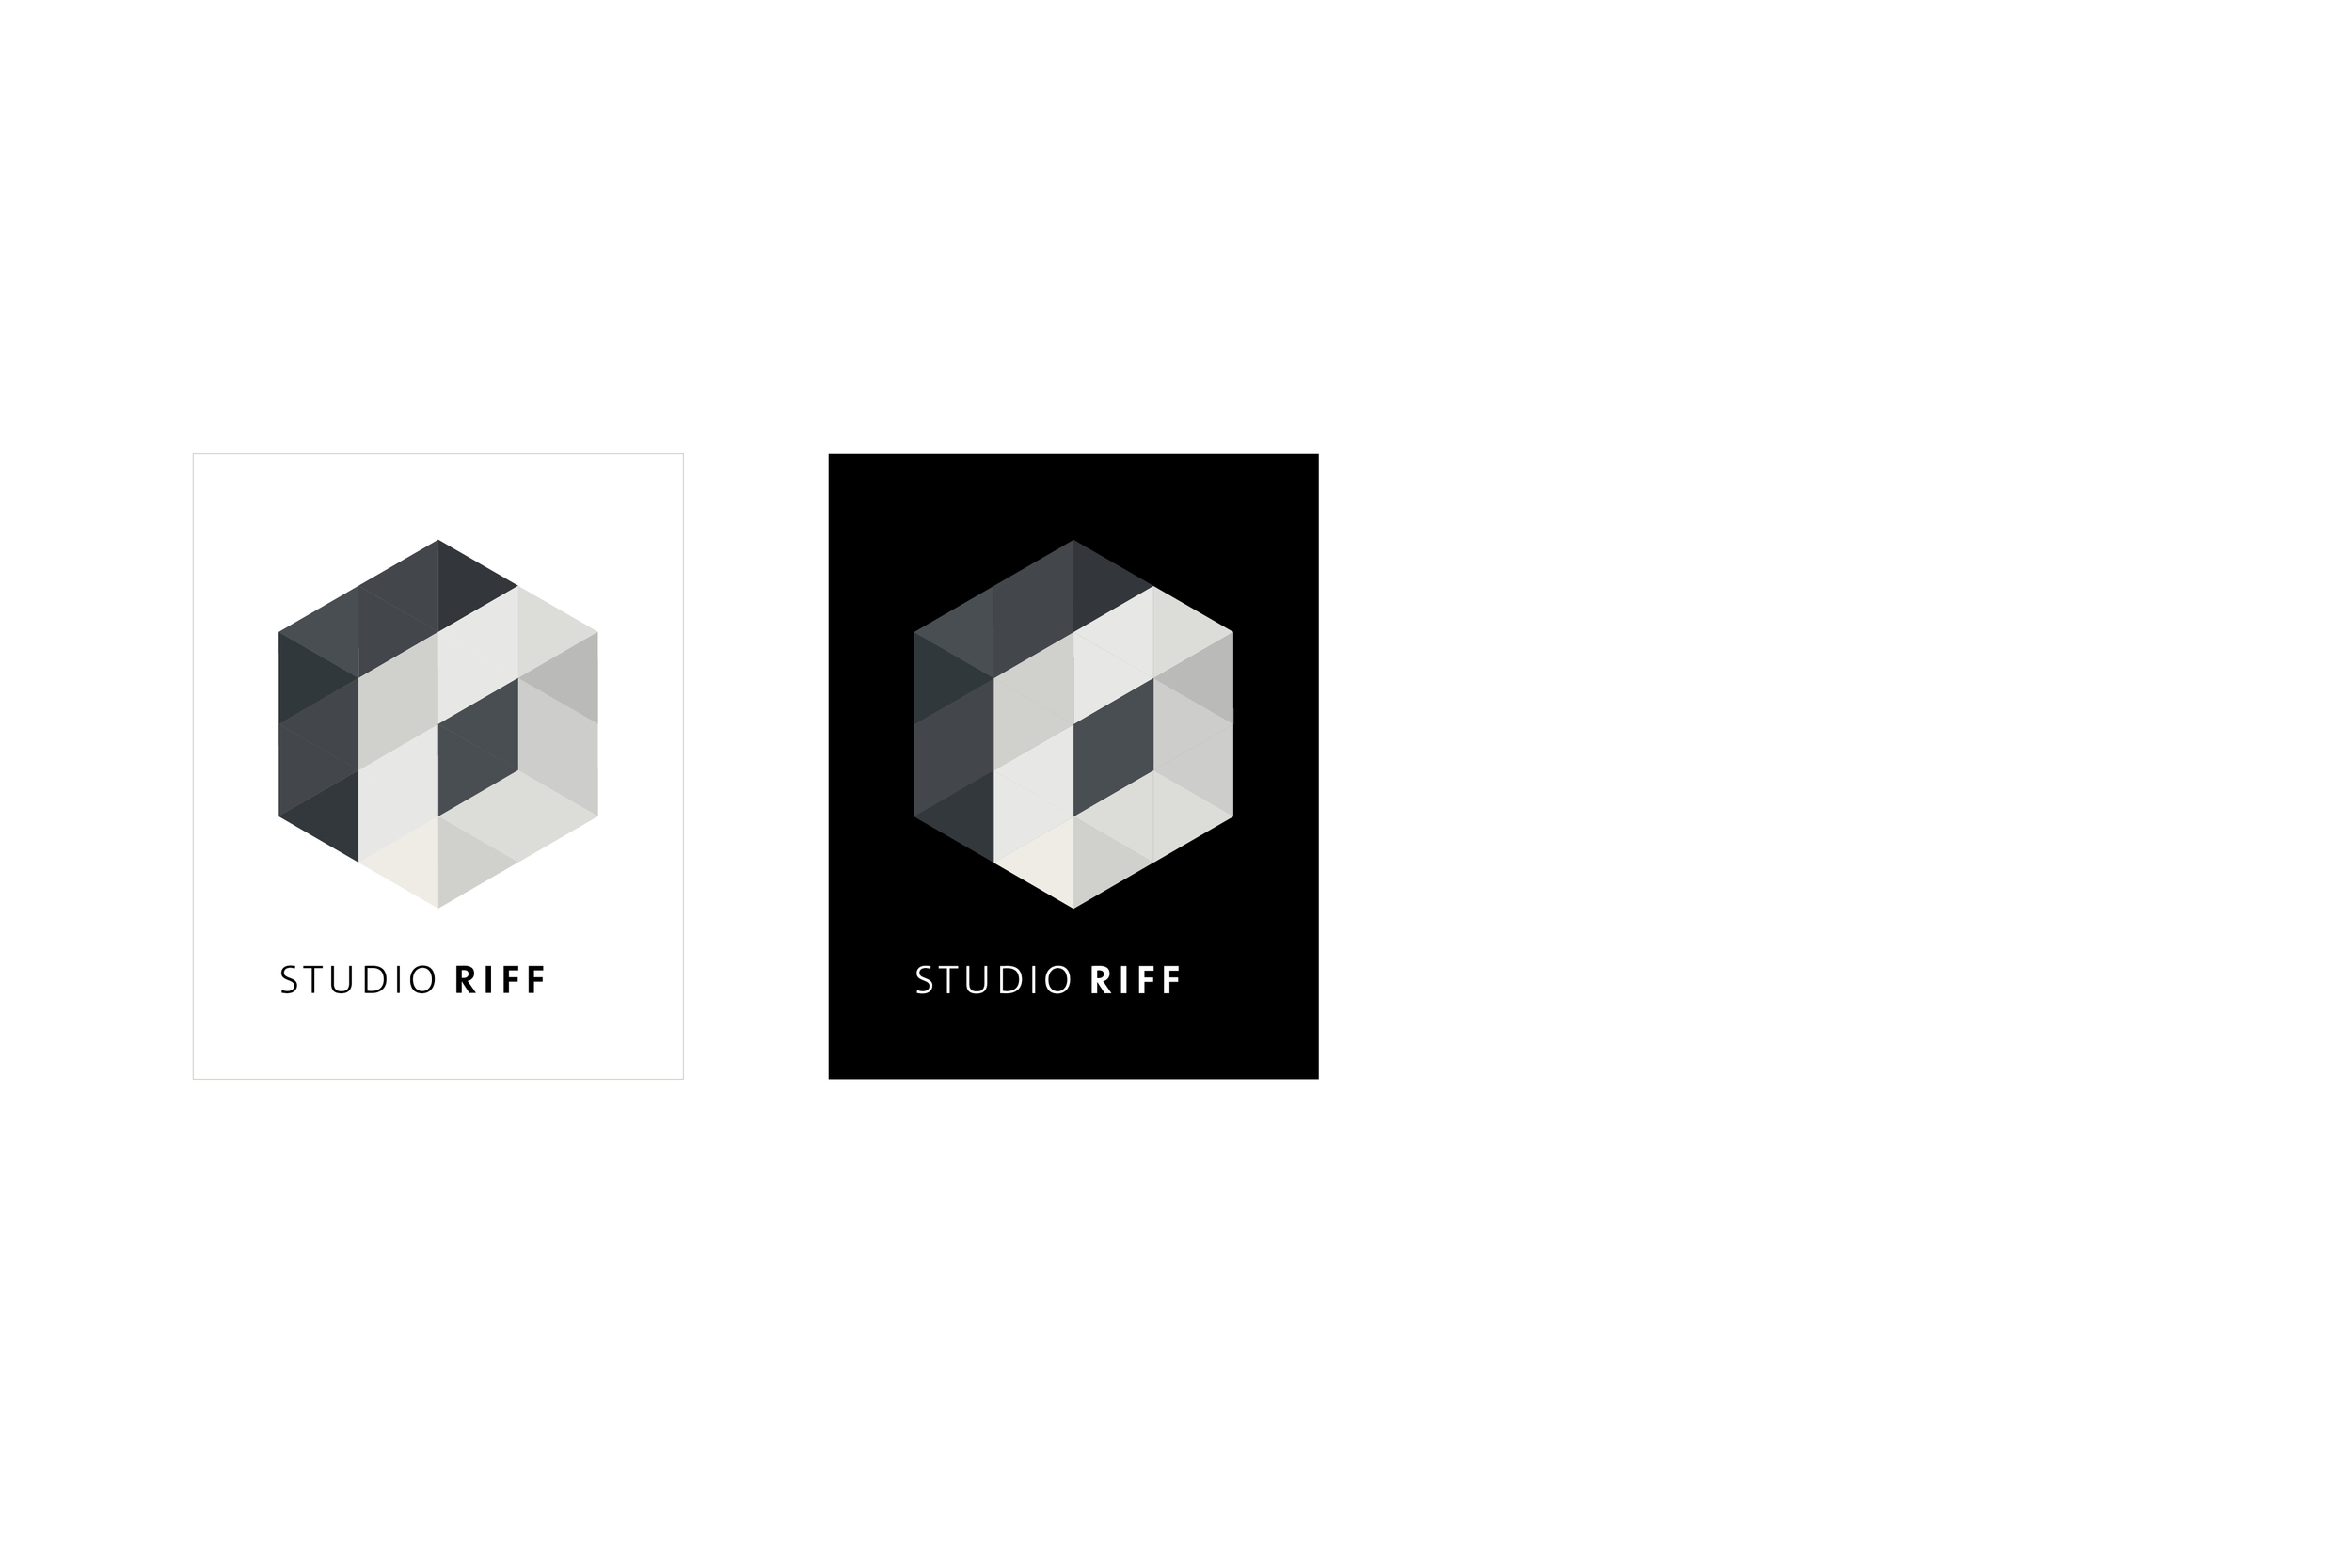   Studio Riff  2015   Ce projet a été développé par le STUDIO RIFF  http://riff.tv.br , une productrice audiovisuelle, qui réalise des documentaires pour la télévision et Internet. Le logo a été conçu à partir de la figure d’une « chambre noire », où